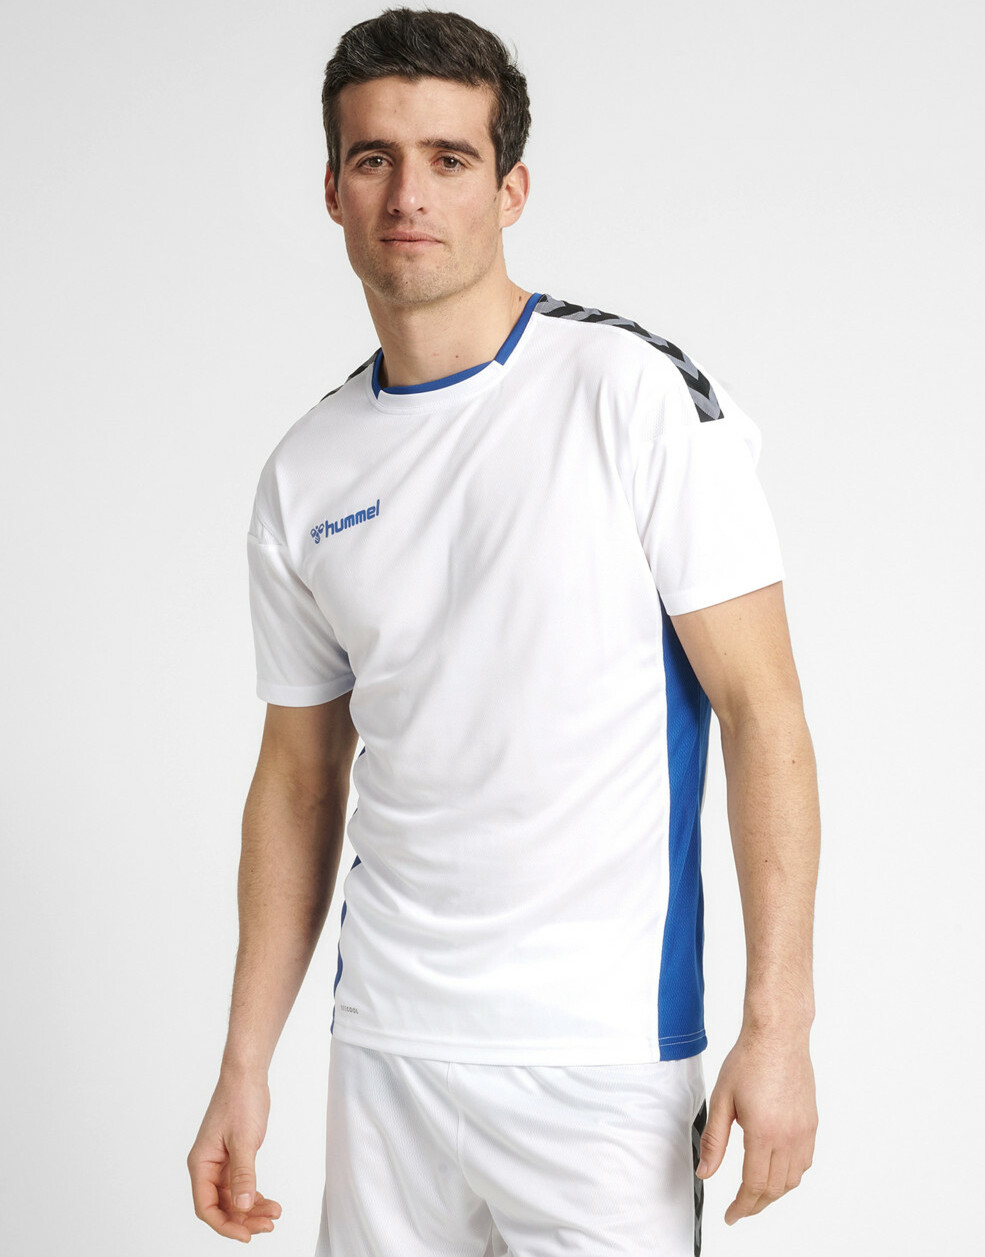 biała koszulka sportowa krótki rękaw logo kontrast